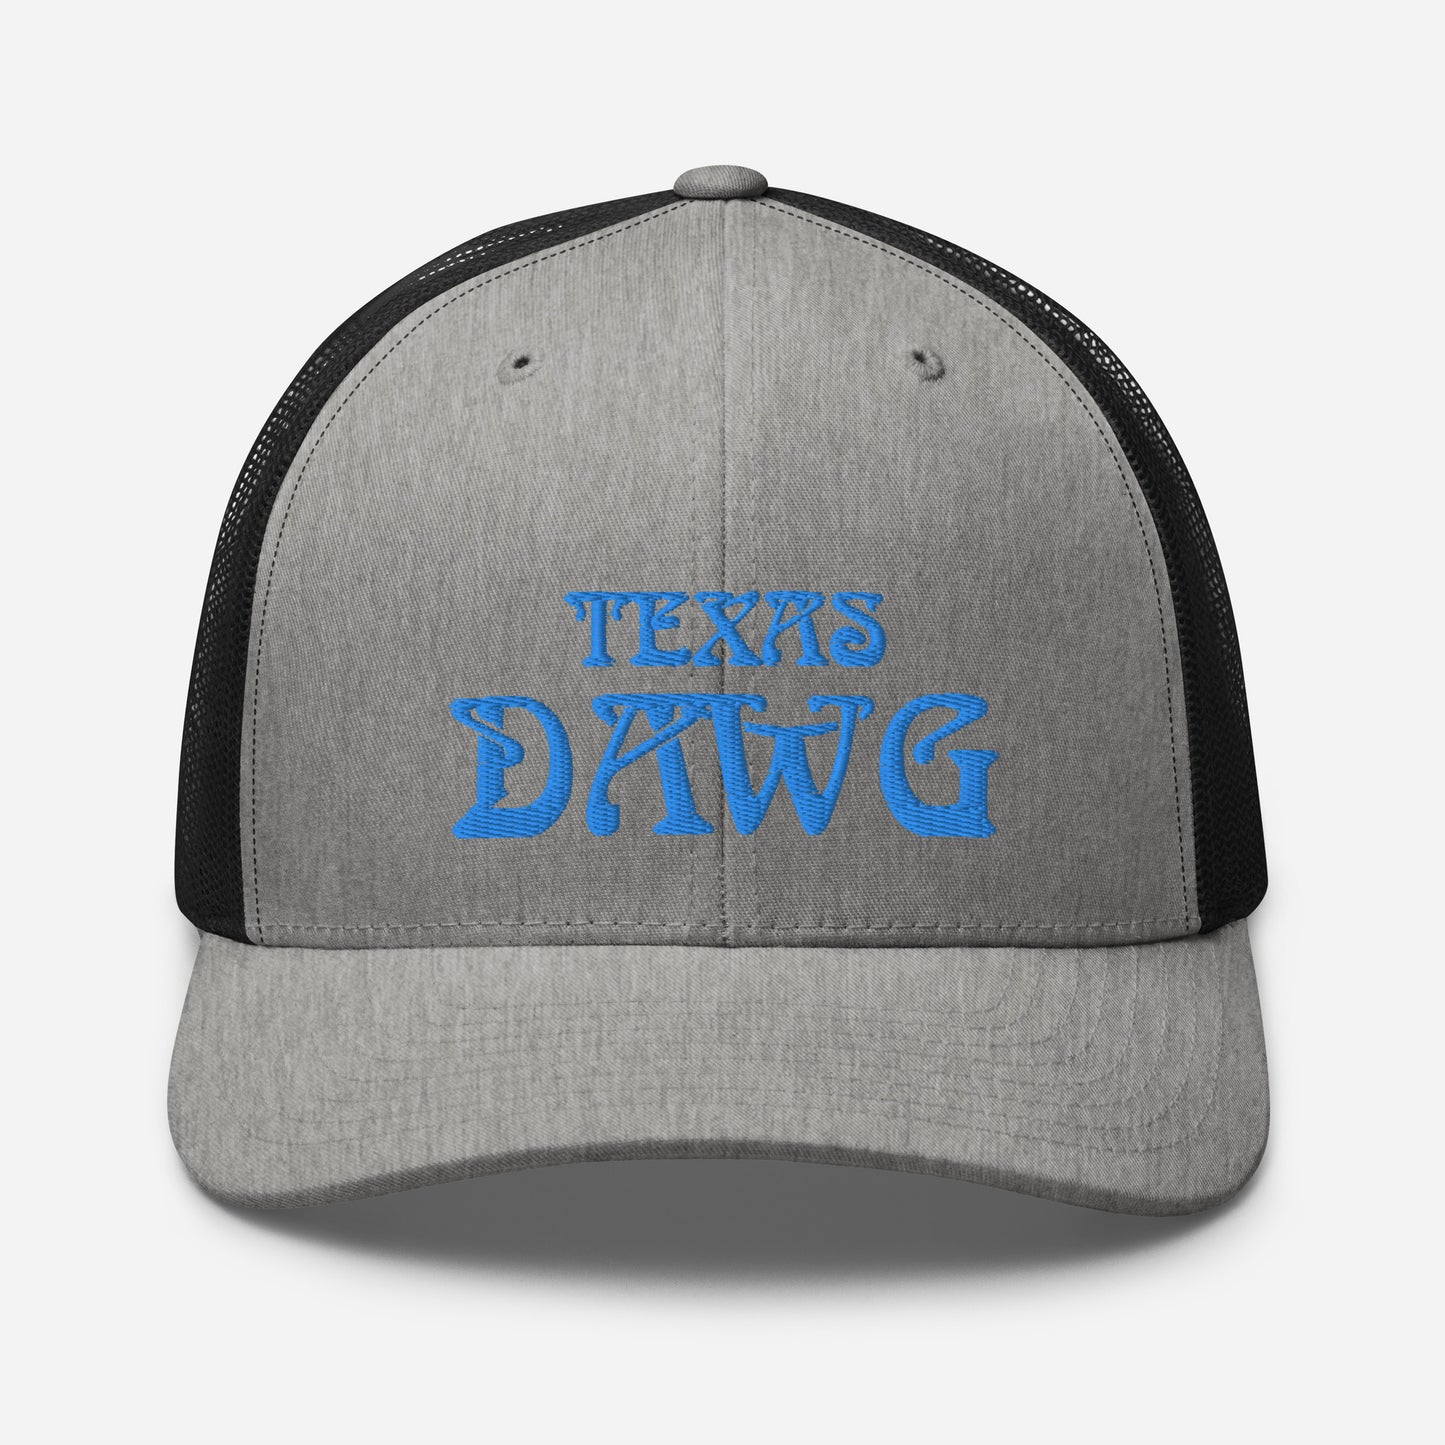 Blue Texas Dawg Funny Trucker Cap